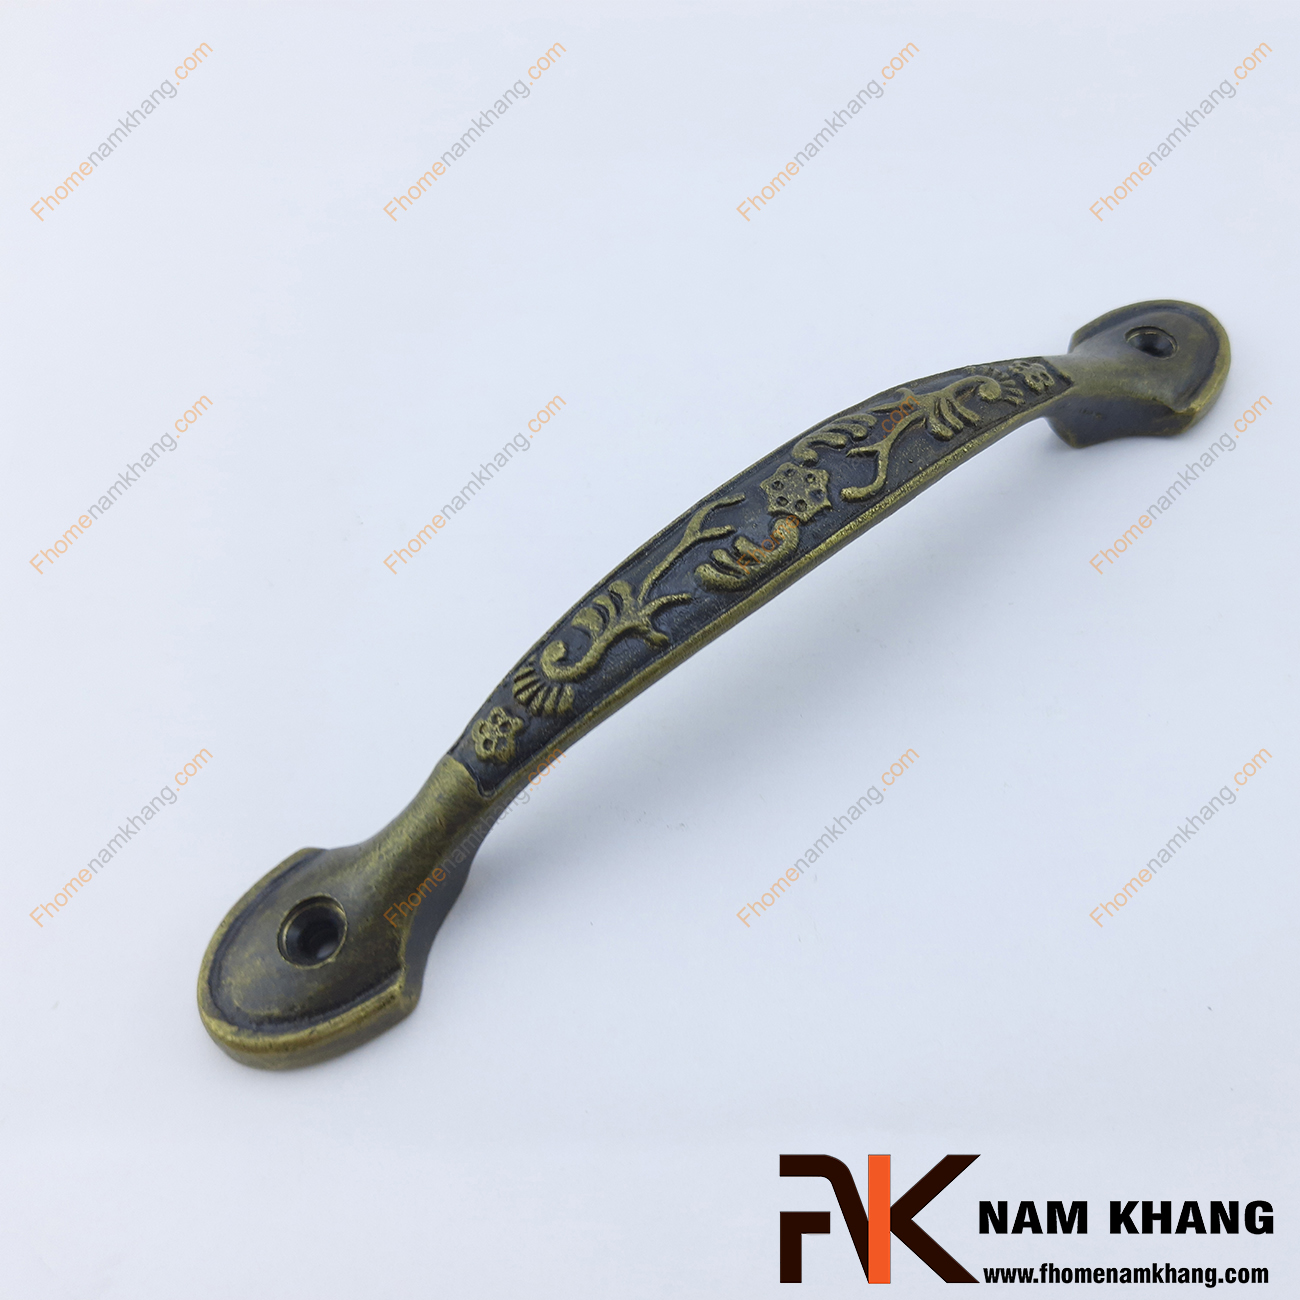 Sản phẩm tay nắm tủ hoa lá cổ NKD092-190 là một sản phẩm đặc trưng trong dòng tay nắm nội thất cổ do được sử dụng họa tiết hoa lá cổ trên chất liệu đồng cao cấp.